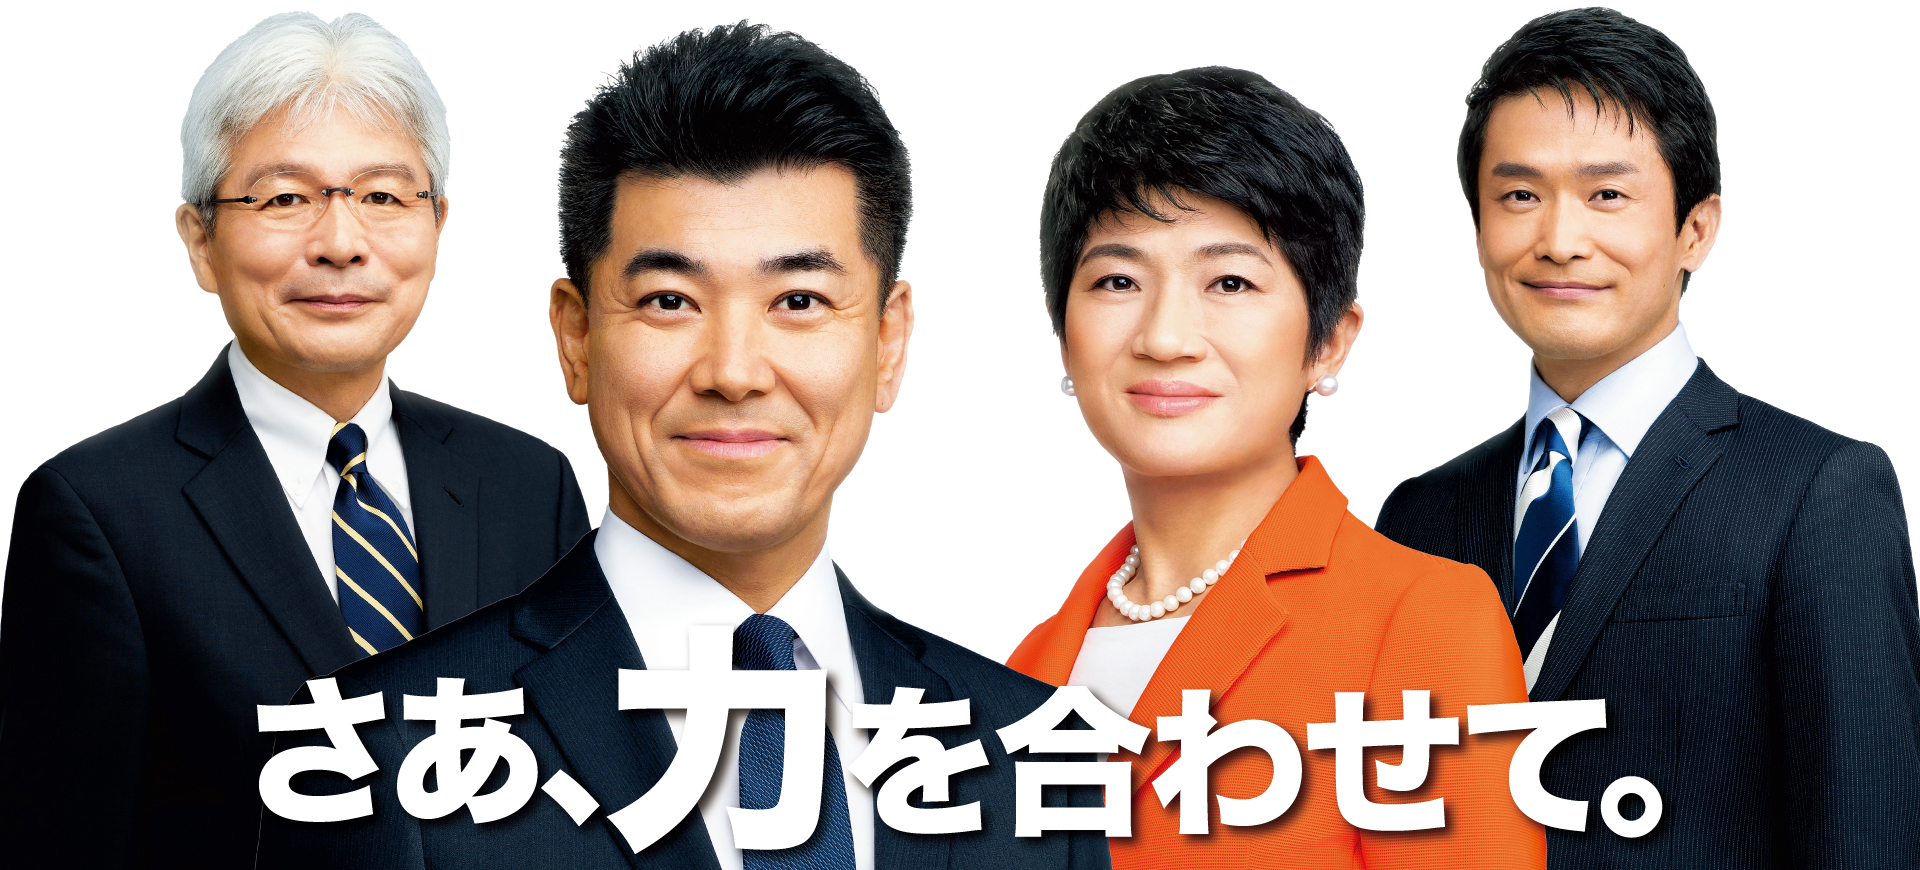 立憲民主党北海道総支部連合会